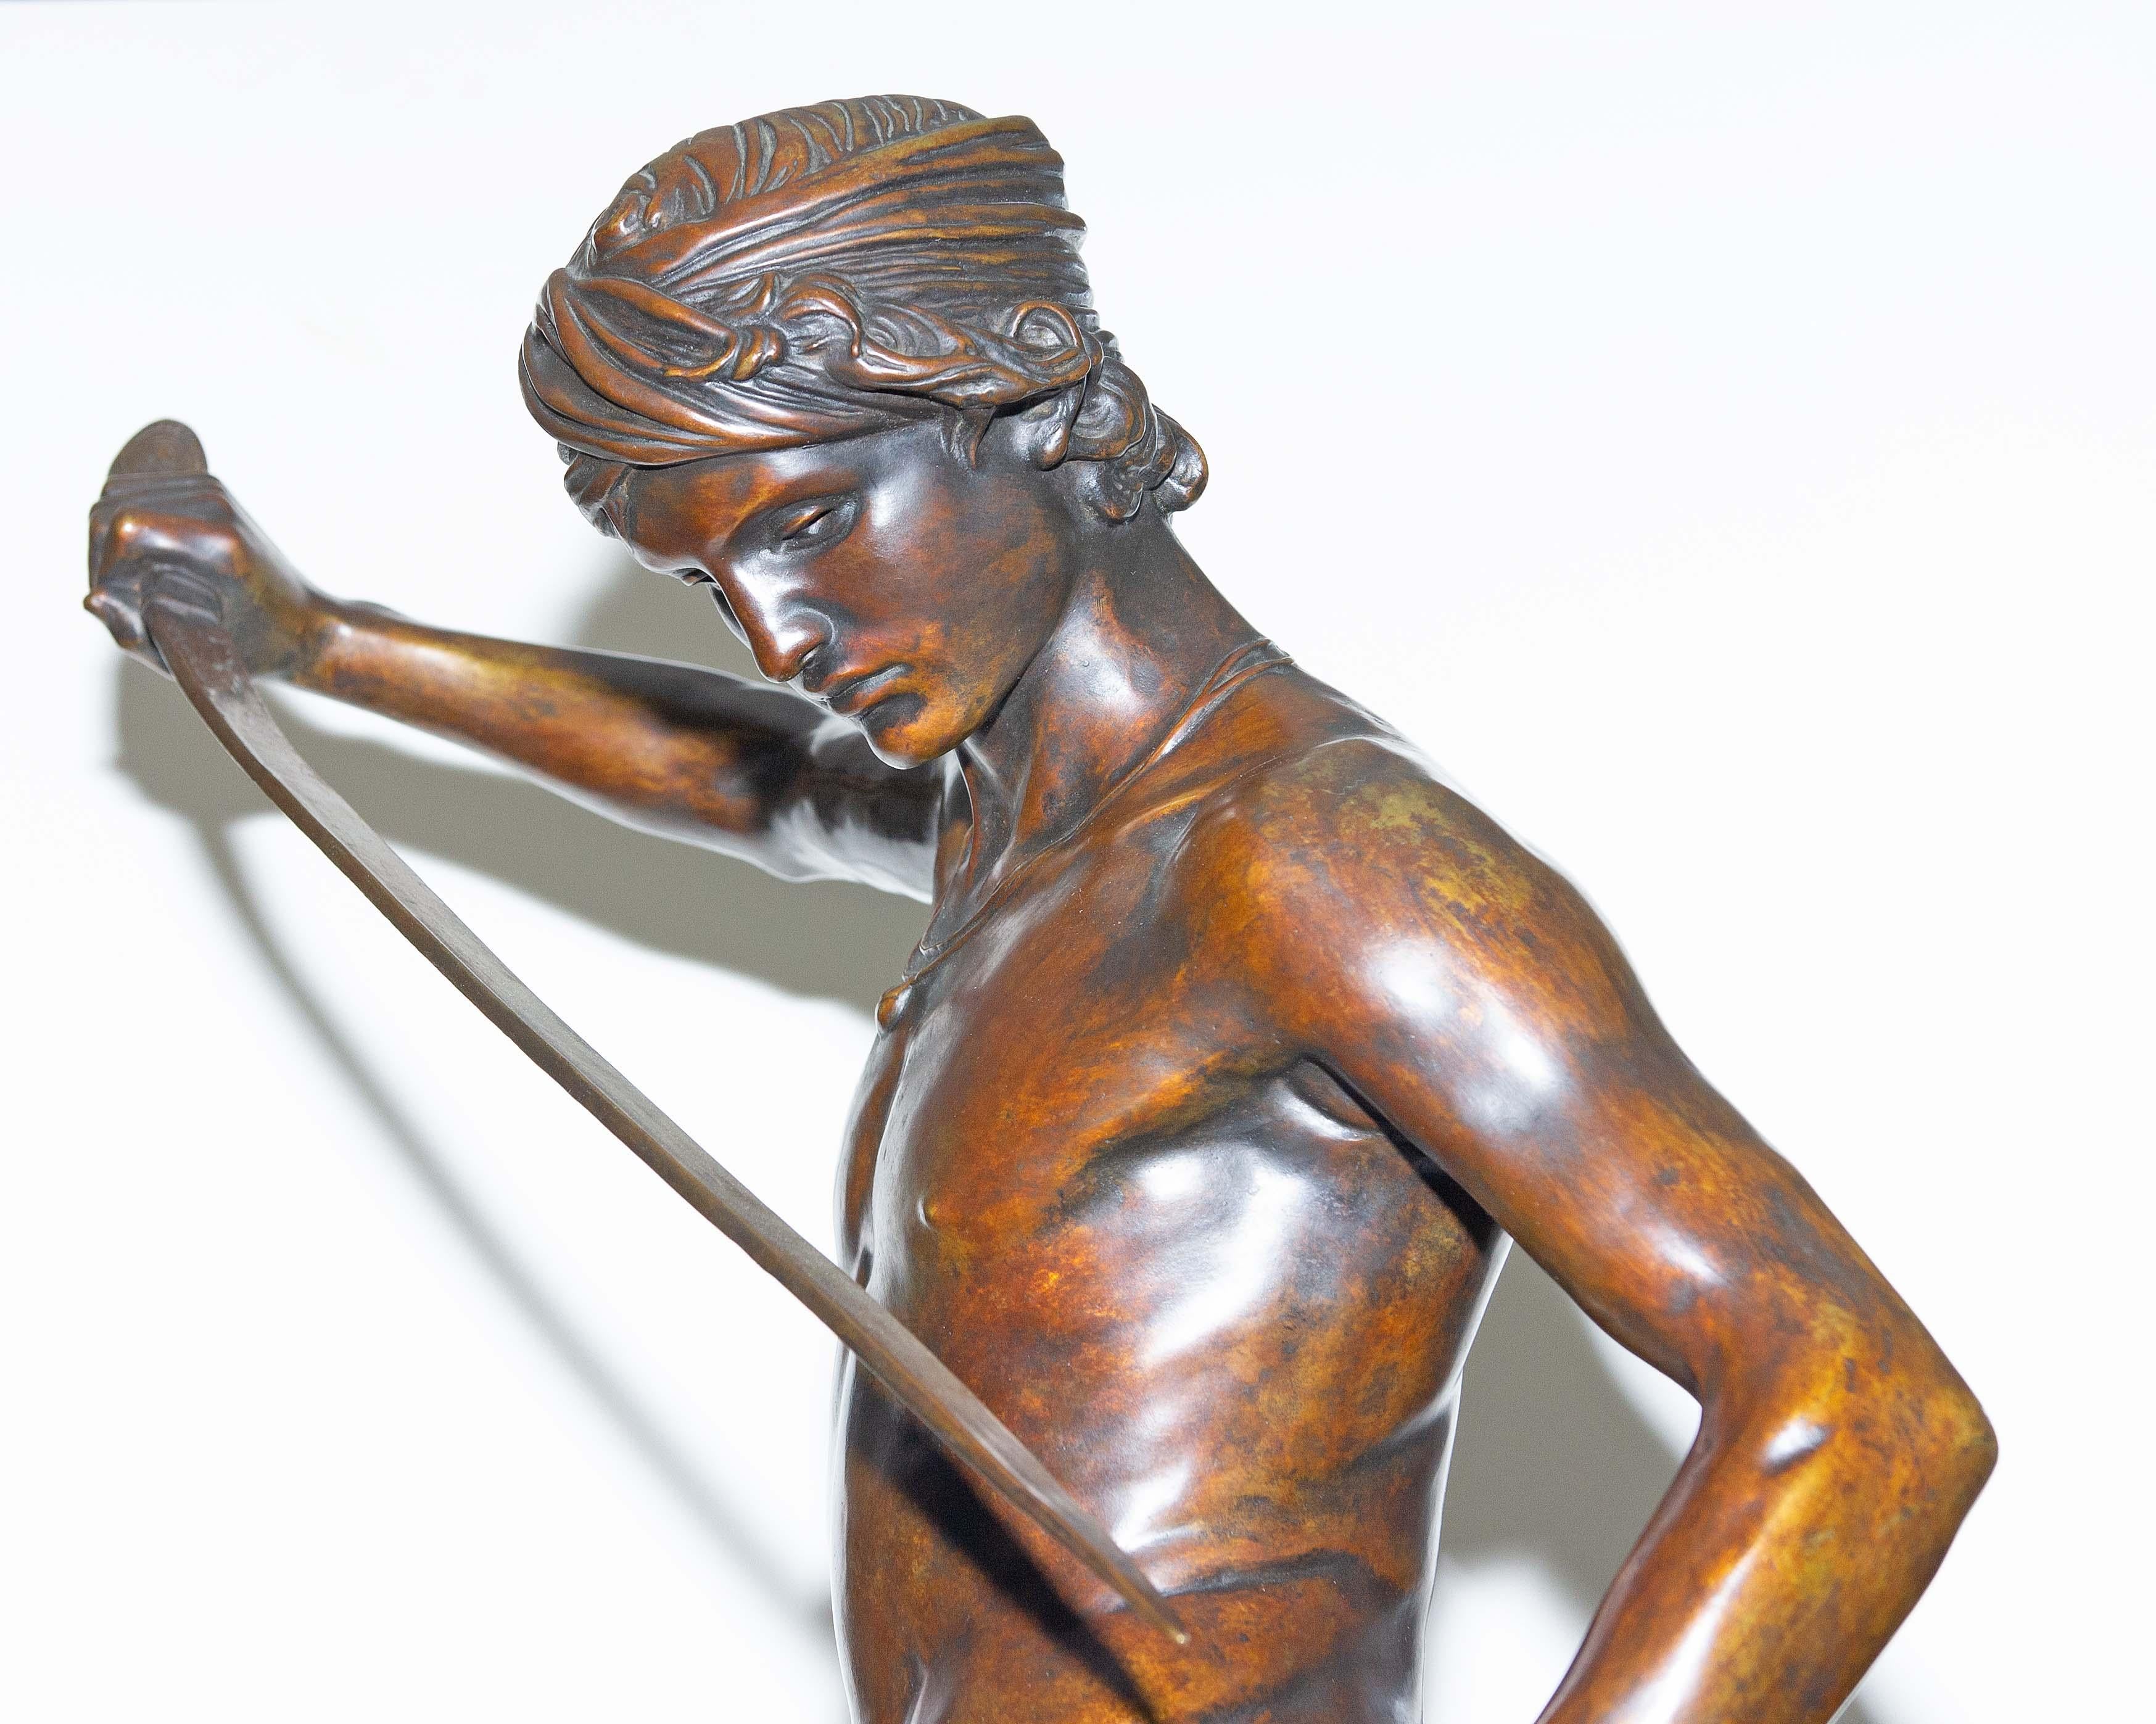 Belle statue française en bronze orientaliste de David après le combat contre Goliath par Antonin Mercie. Ce sujet a reçu la médaille d'honneur lors de son exposition au Salon des Beaux-Arts de Paris. Fin du 19e siècle. 42